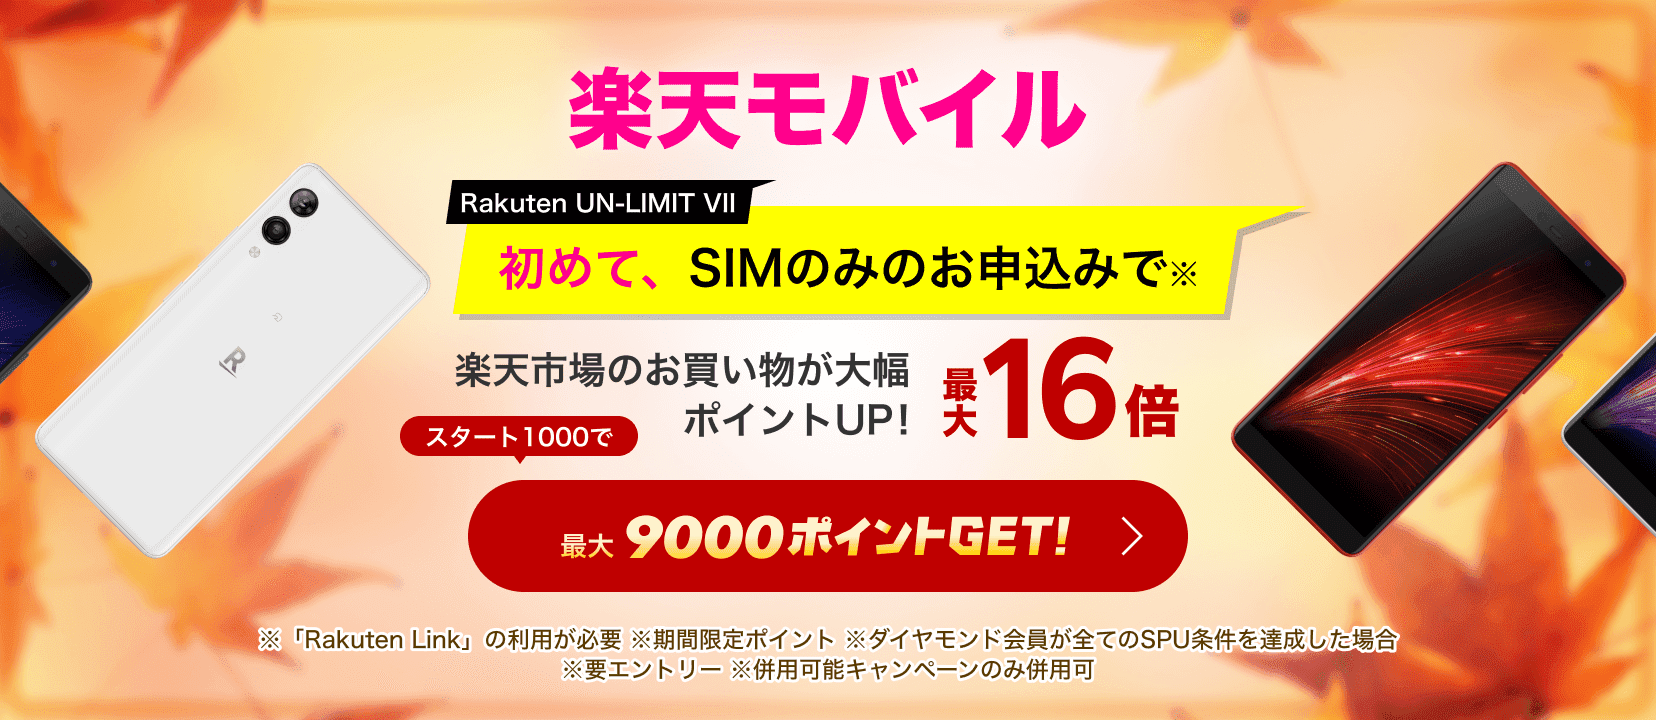 楽天モバイル Rakuten UN-LIMIT VII 初めて、SIMのみのお申込みで※ 楽天市場のお買い物が常時大幅アップで最大16倍! 最大9000ポイントGET! ※「Rakuten Link」の利用が必要です。※ 期間限定 ポイント※ SPUによる最大14倍とダイヤモンド会員のRakuten UN-LIMITご契約者最大+2倍の合計値です。※ 要エントリー。※ 併用可キャンペーン以外のキャンペーンや製品（スマホ本体）のキャンペーンとは併用できません。